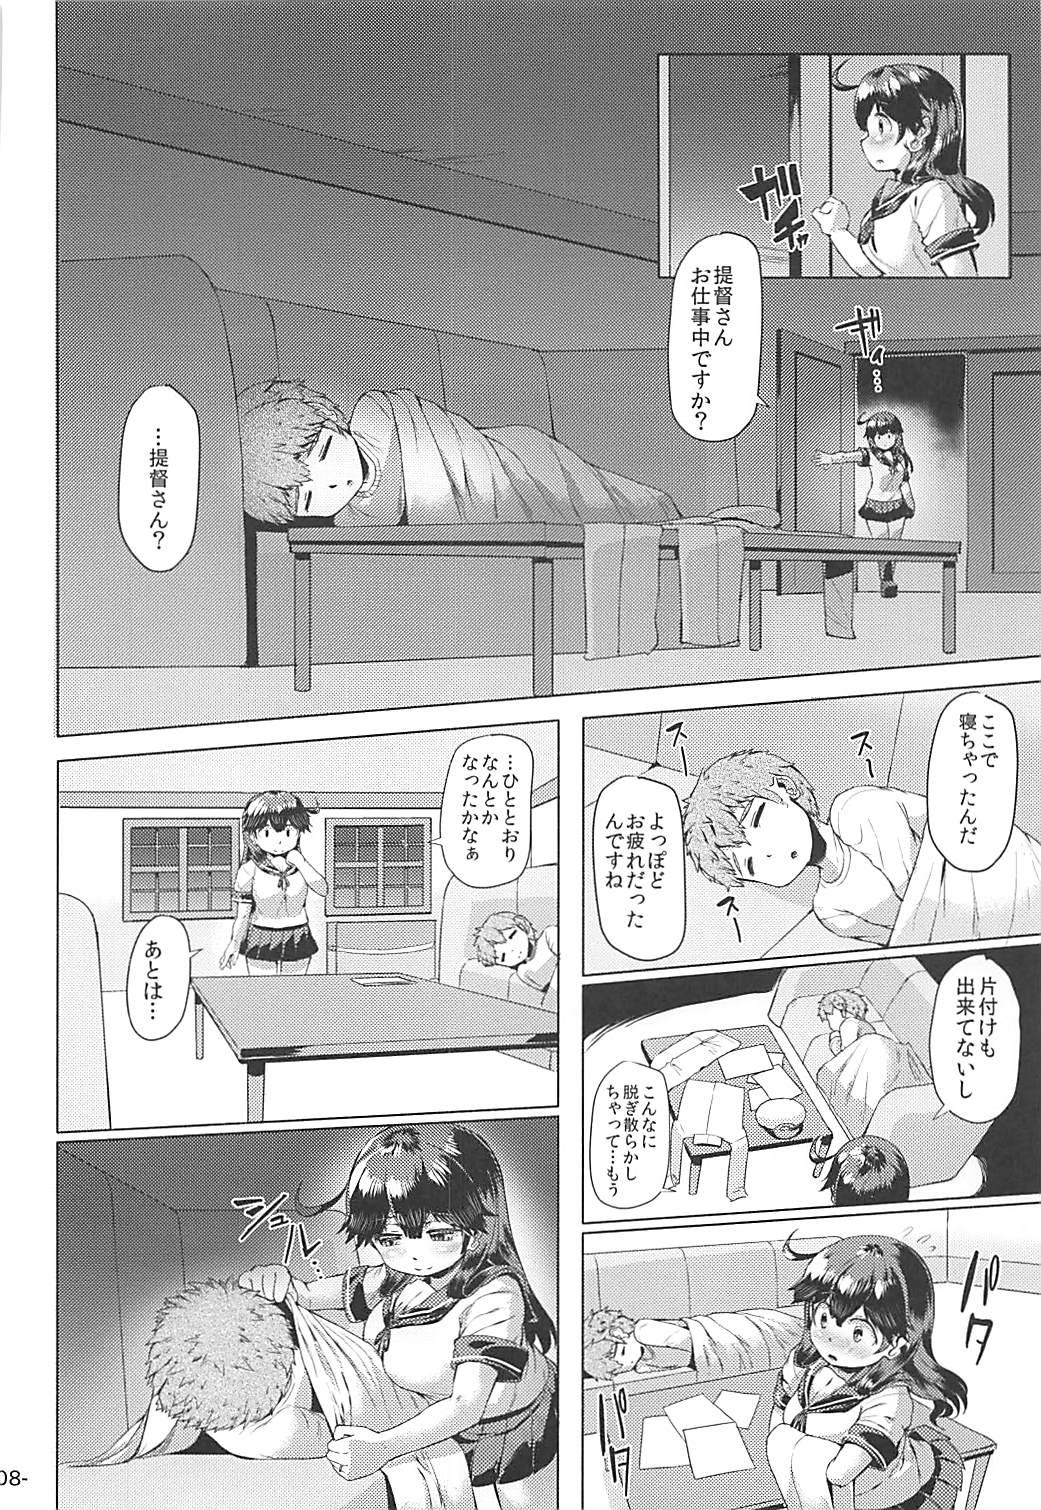 Mediumtits Hishokan Ushio wa Hitori de Nerezu. - Kantai collection Guys - Page 7